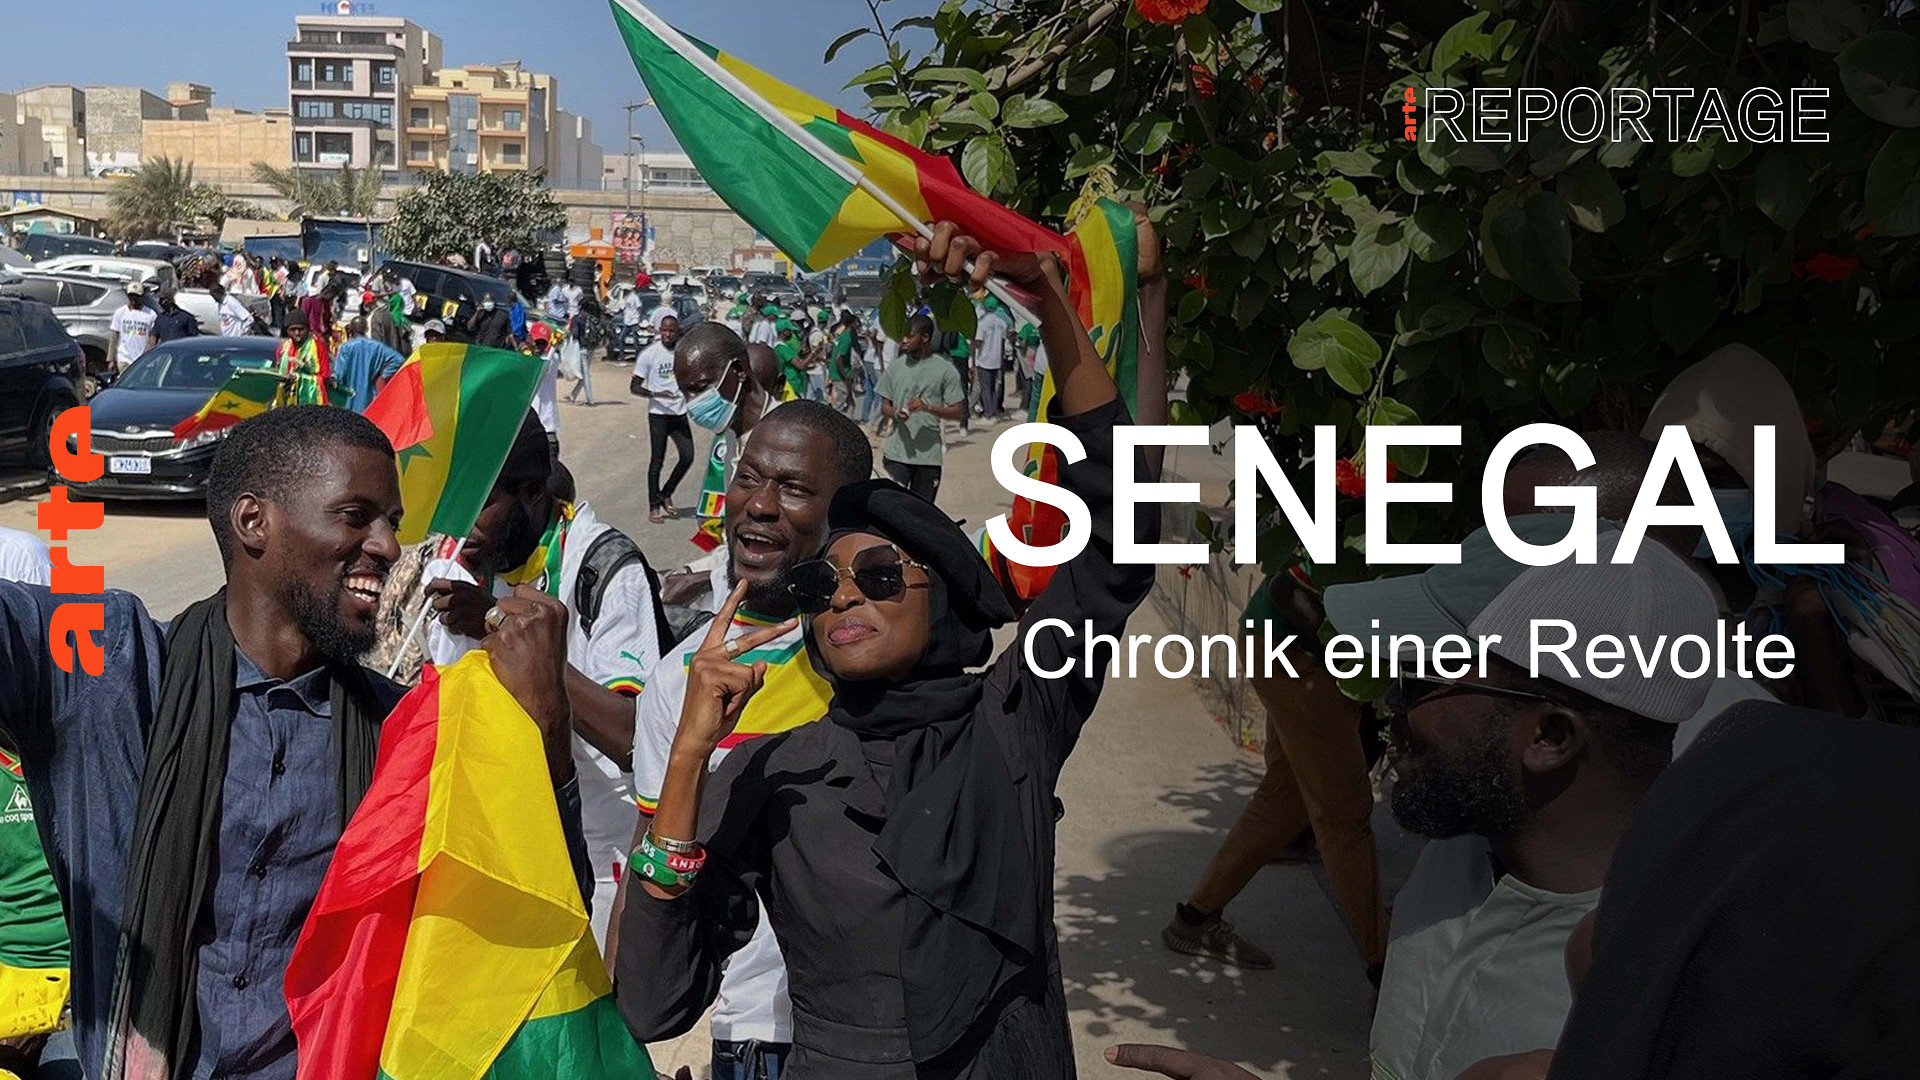 Senegal: Chronik einer Revolte